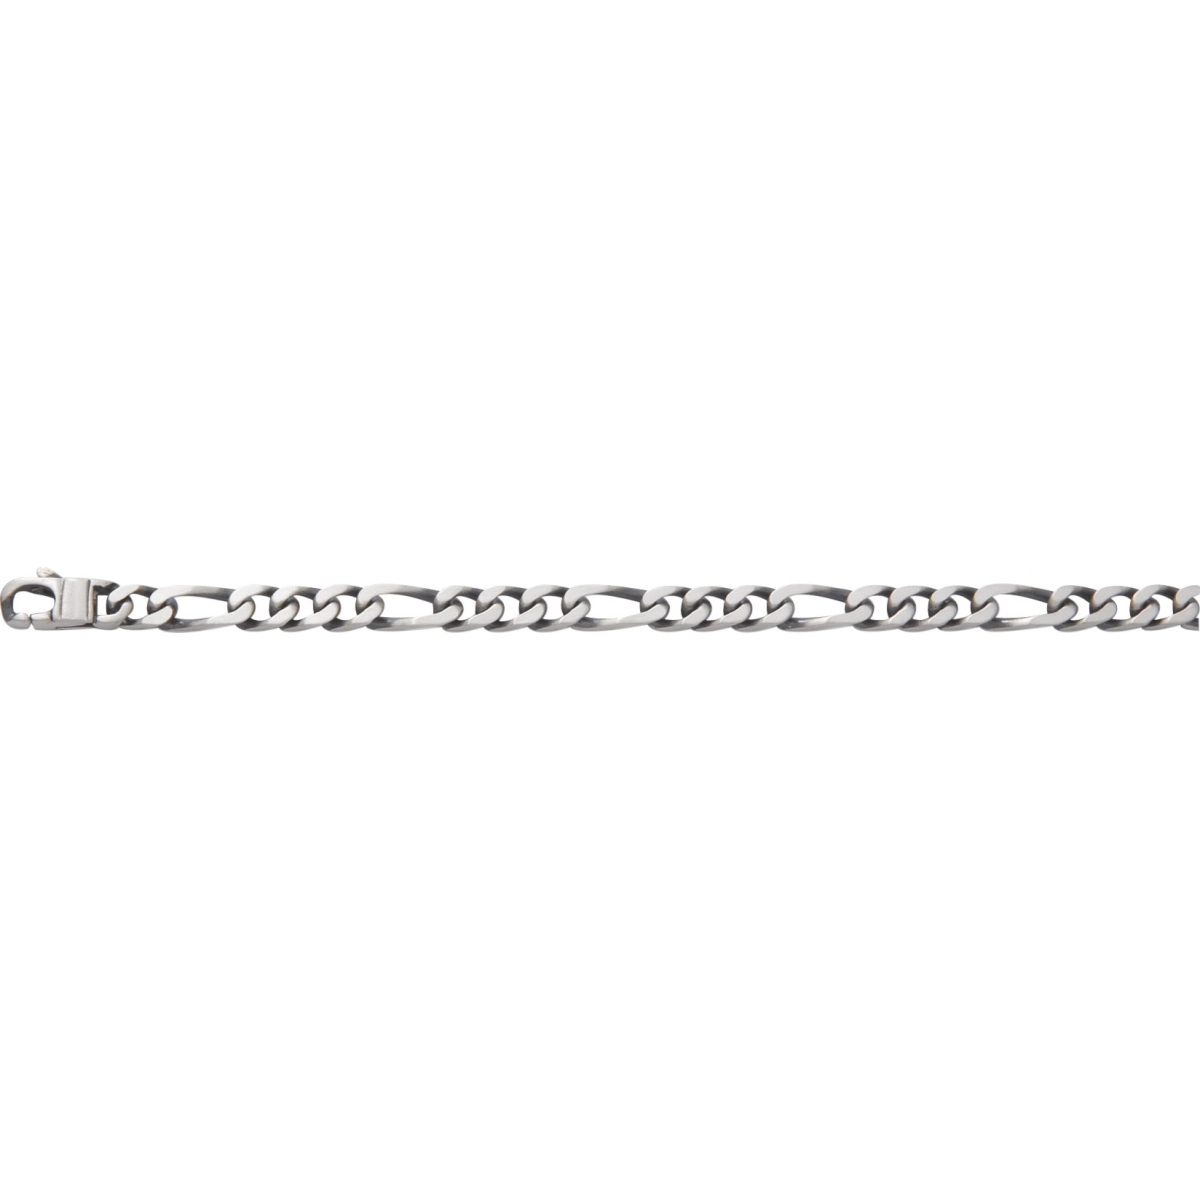 Bracelet 5mm 925 Silver - Size: 21  Lua Blanca  201485B.1.21